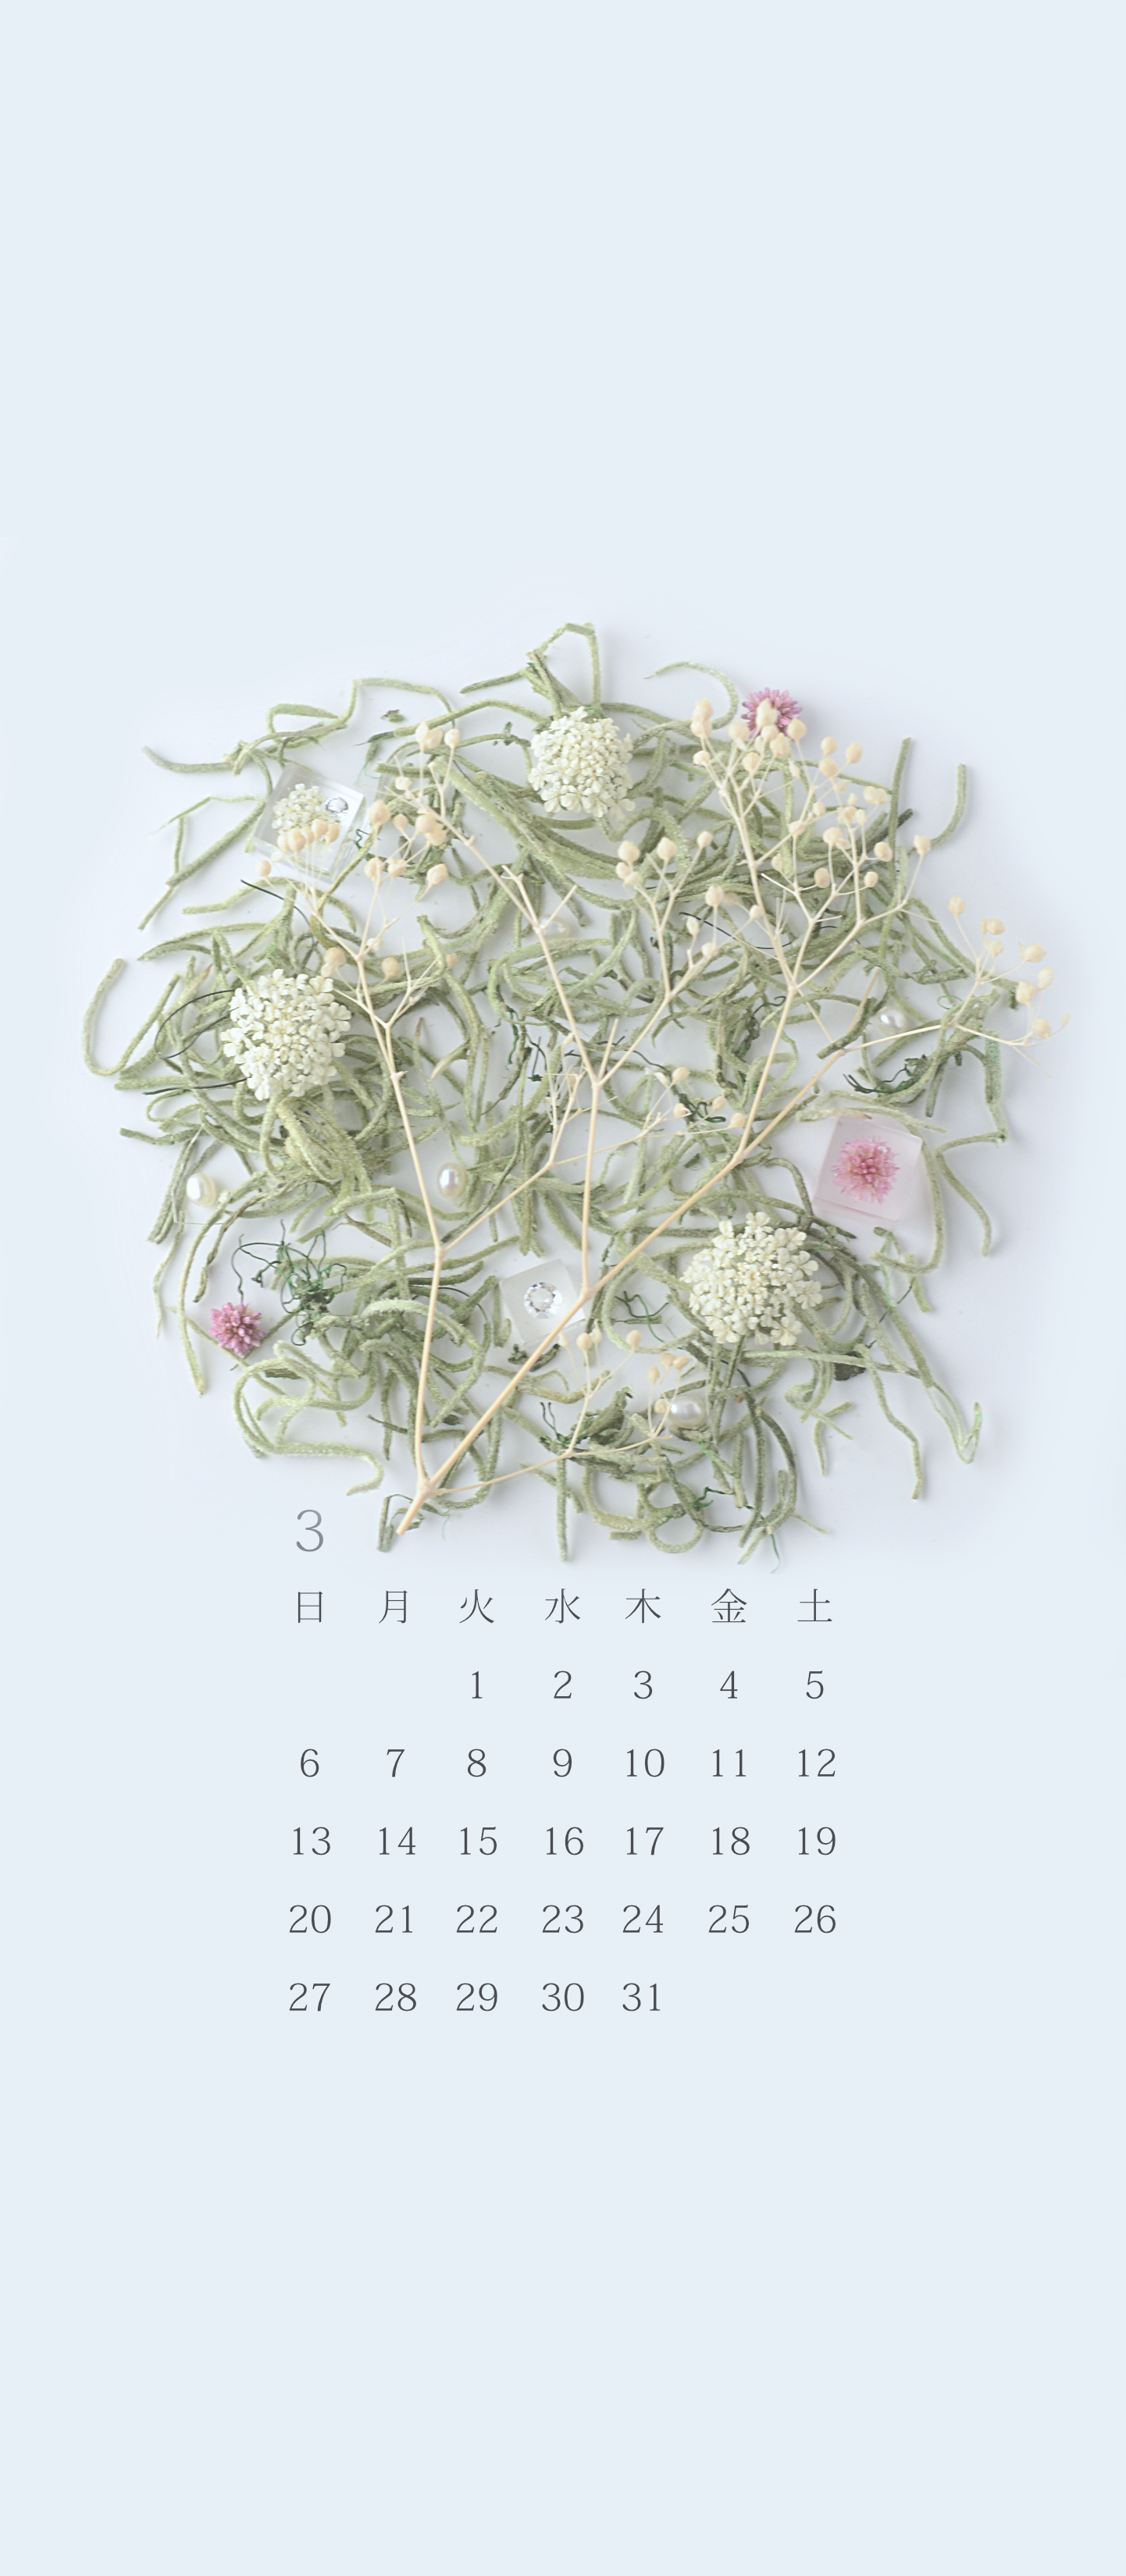 無料ロック画面カレンダー 「3月 はじまりの春」